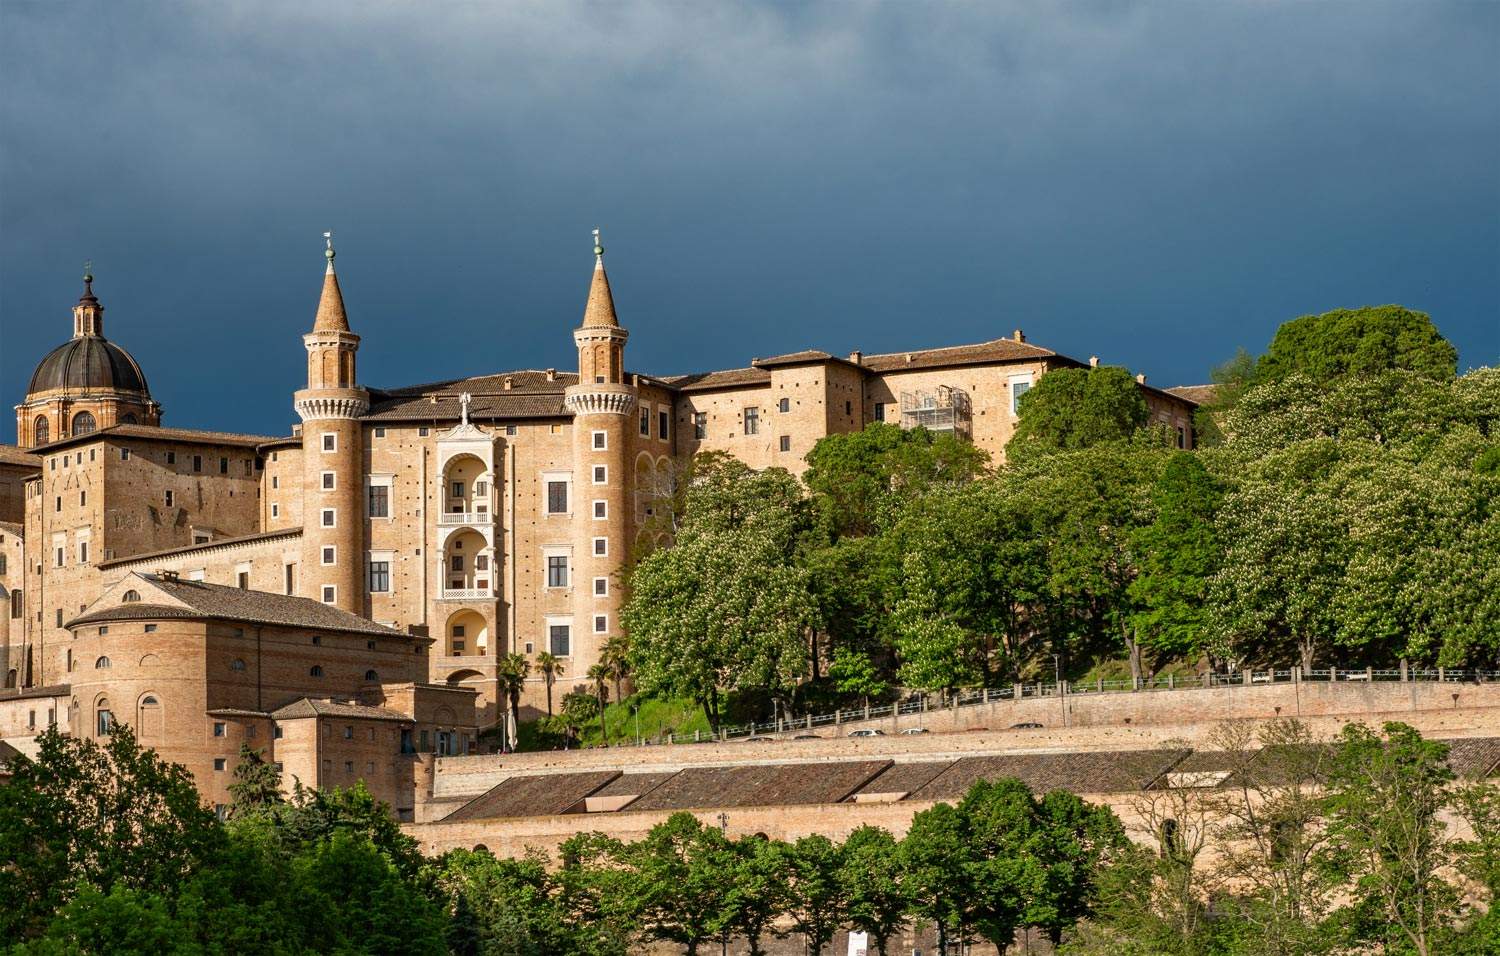 Urbino, qué ver: los 10 lugares que visitar en la ciudad del Renacimiento